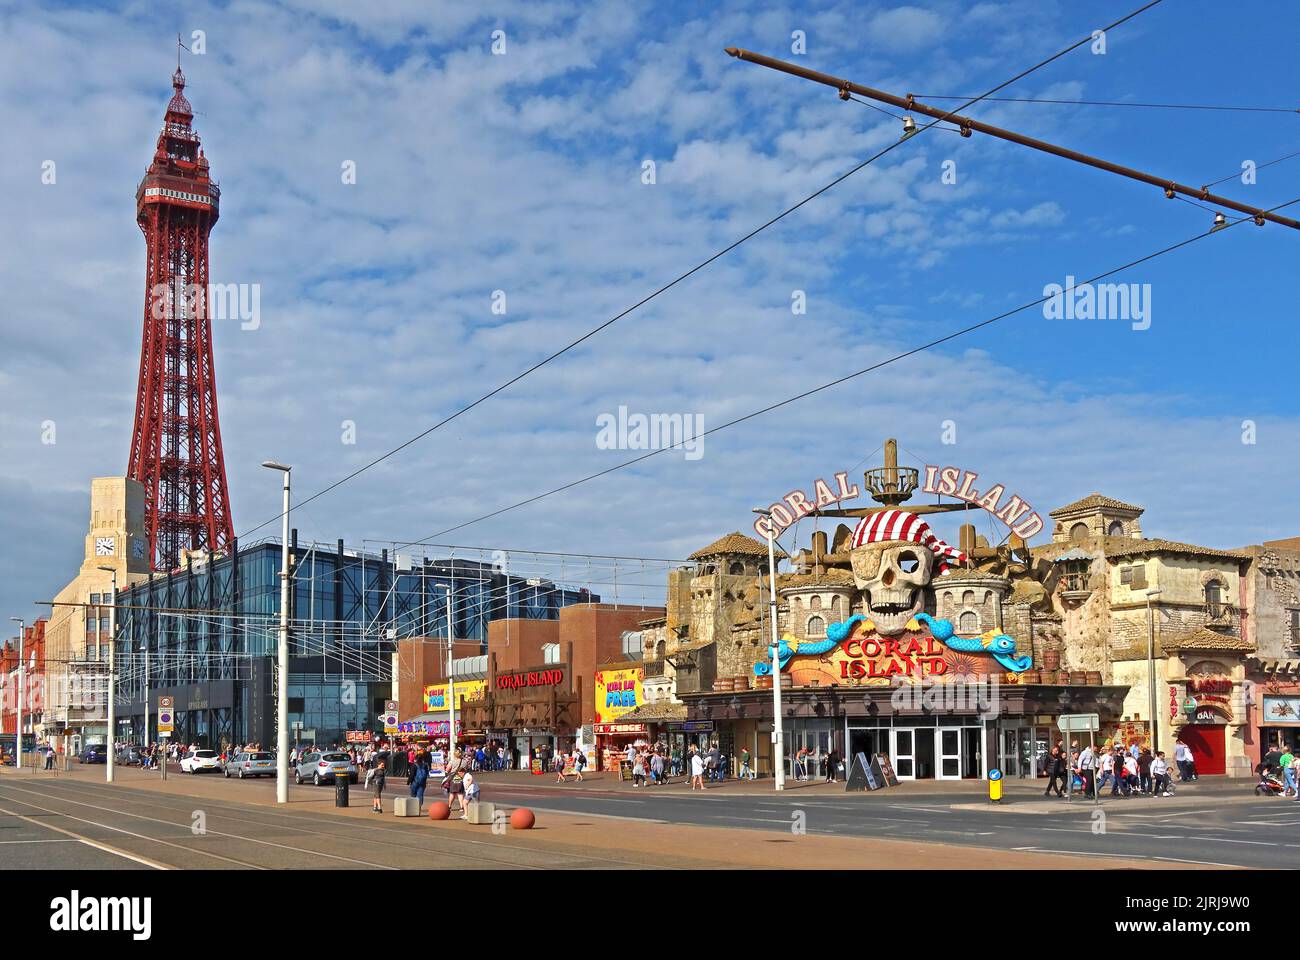 The Blackpool Tower, célèbre icône, sur la promenade, Blackpool station du nord-ouest, Lancashire, Angleterre, Royaume-Uni, FY1 4BJ Banque D'Images